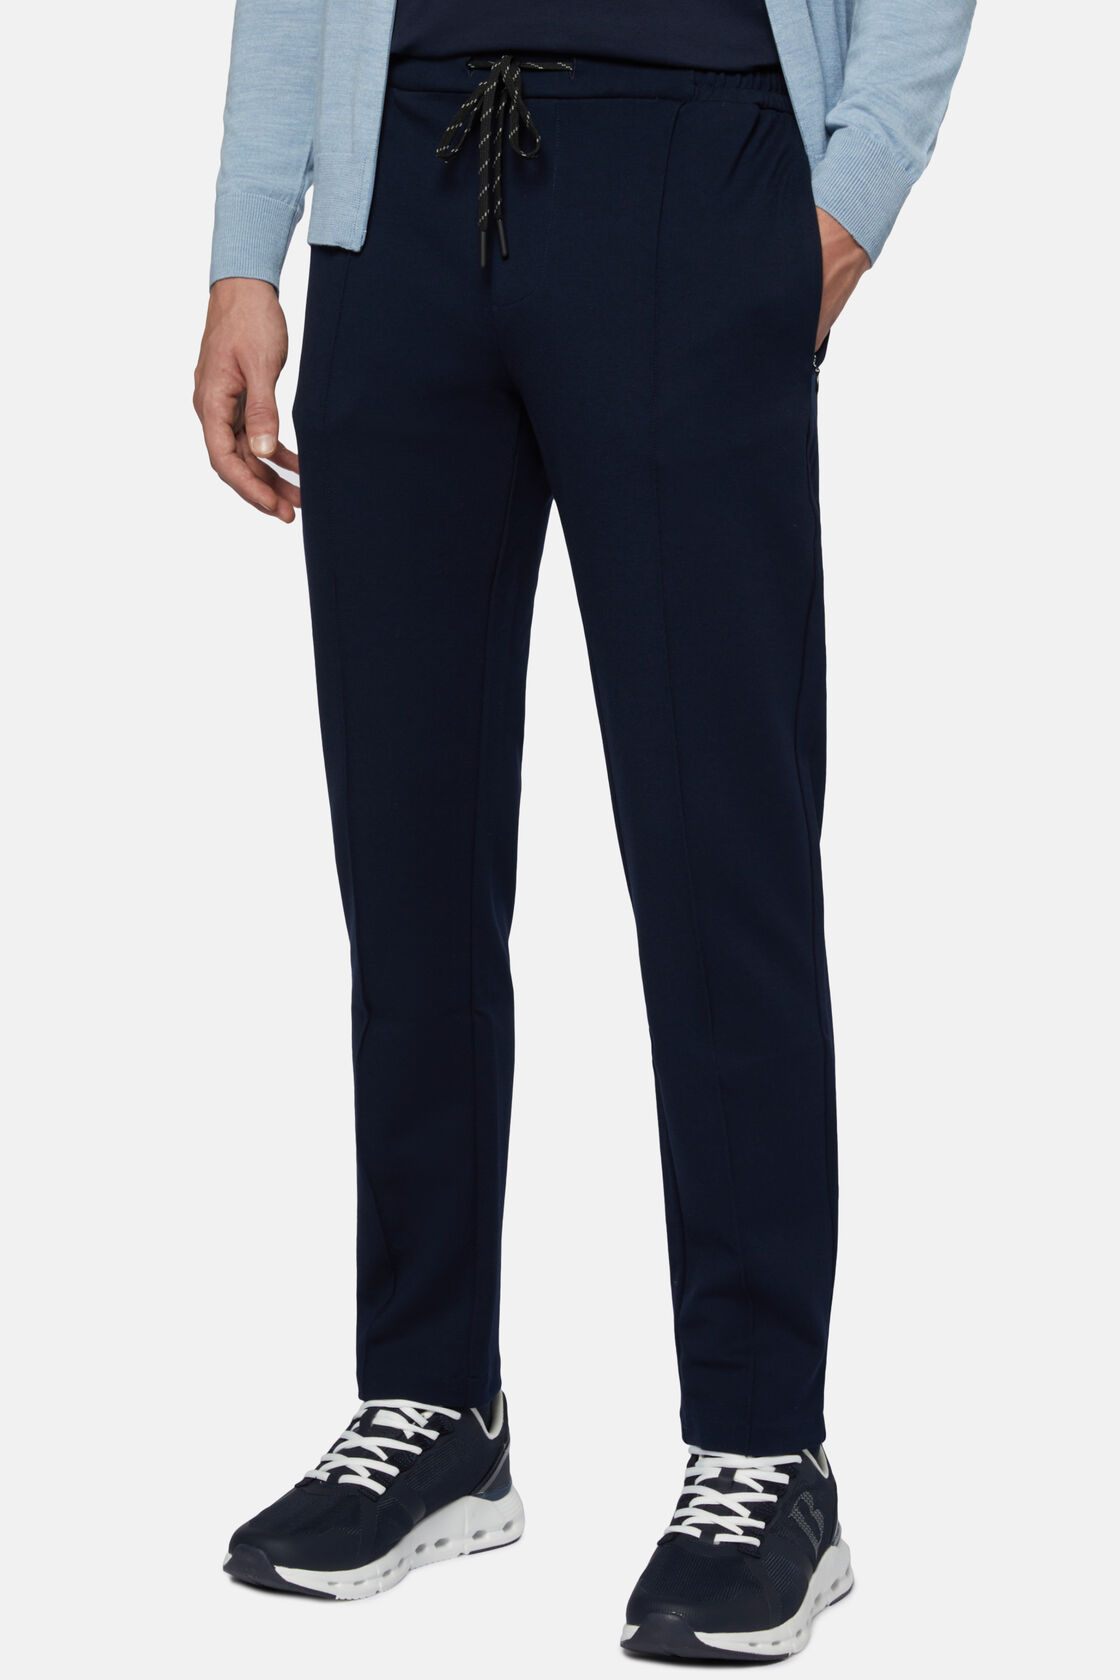 Ελαστικό δετό παντελόνι από τεχνικό ύφασμα, Navy blue, hi-res